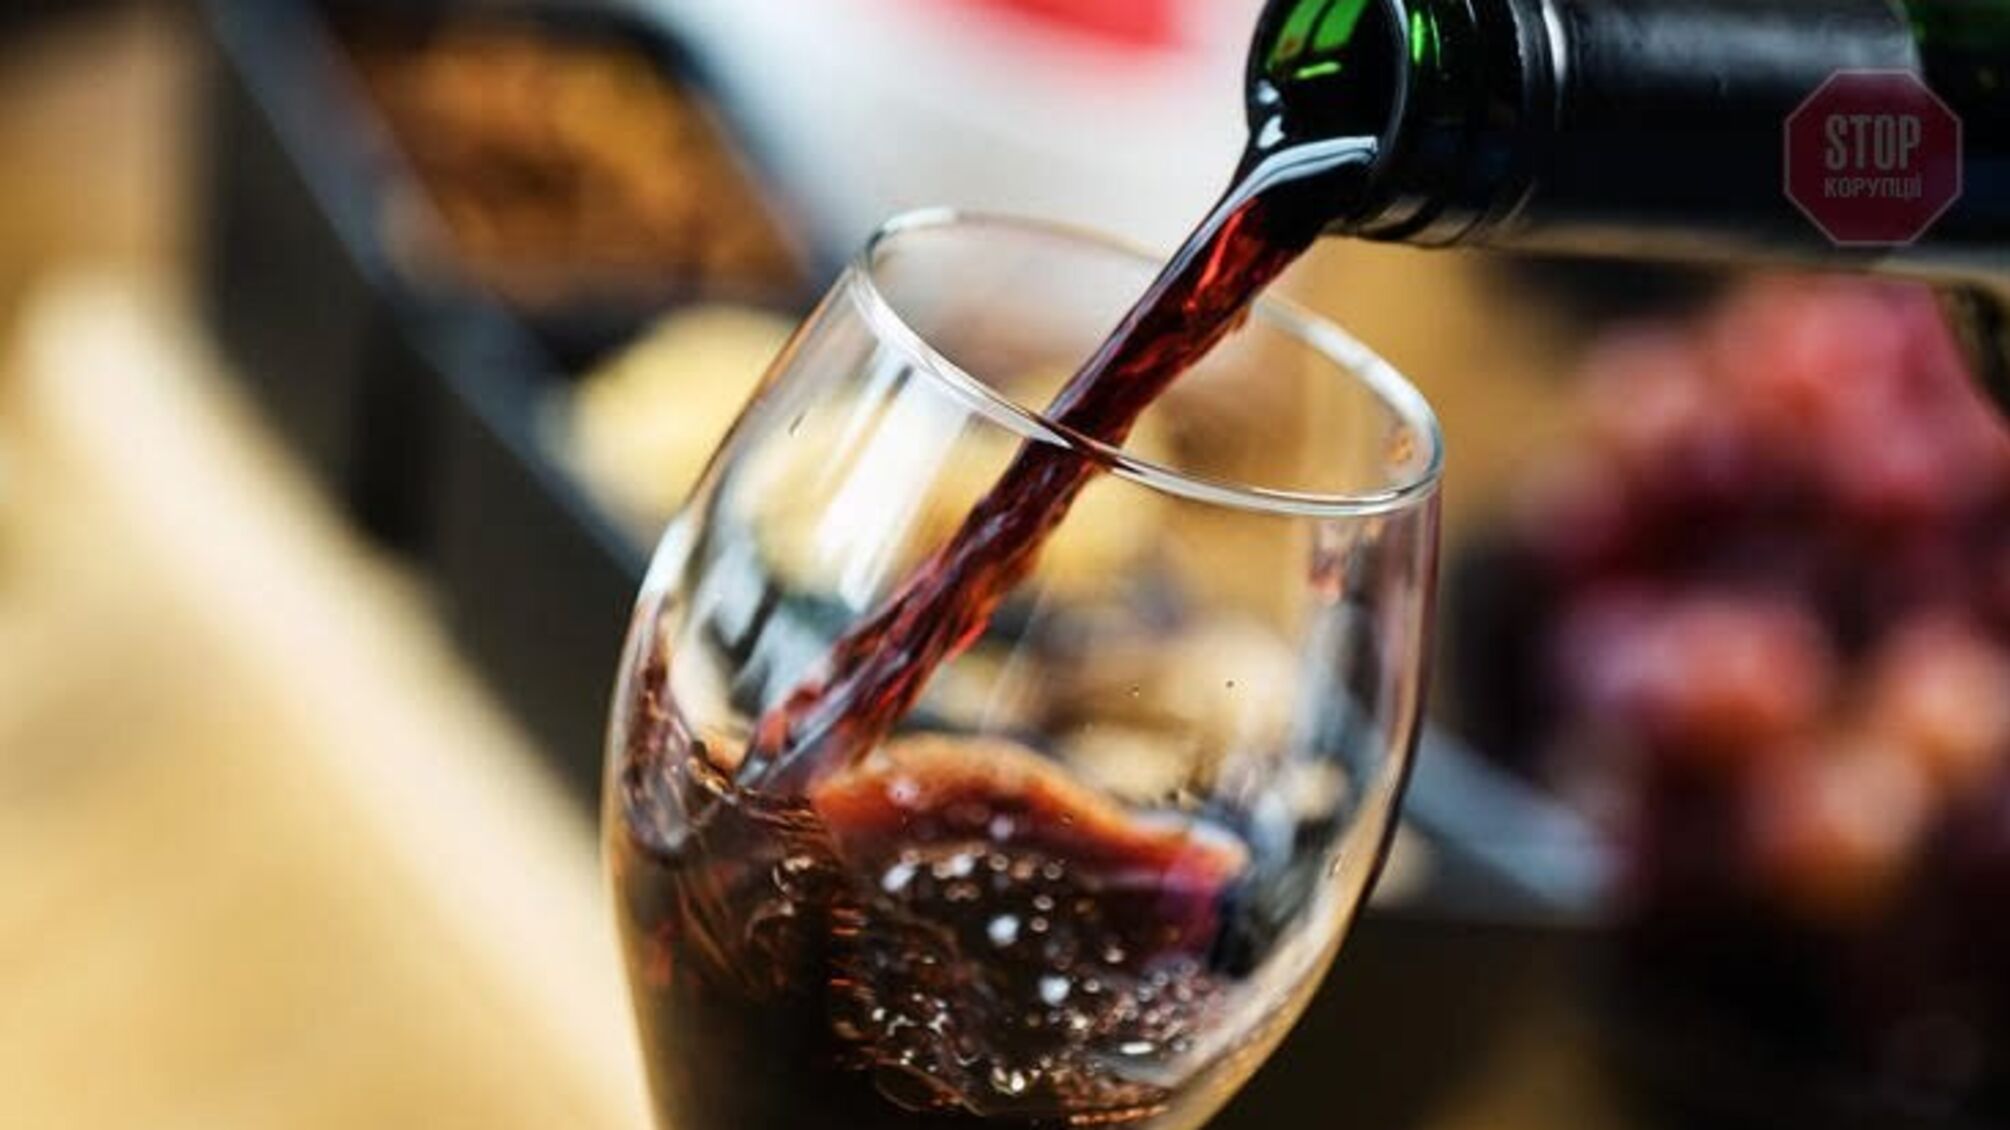 Правительство повысило минимальную цену бутылки игристого вина